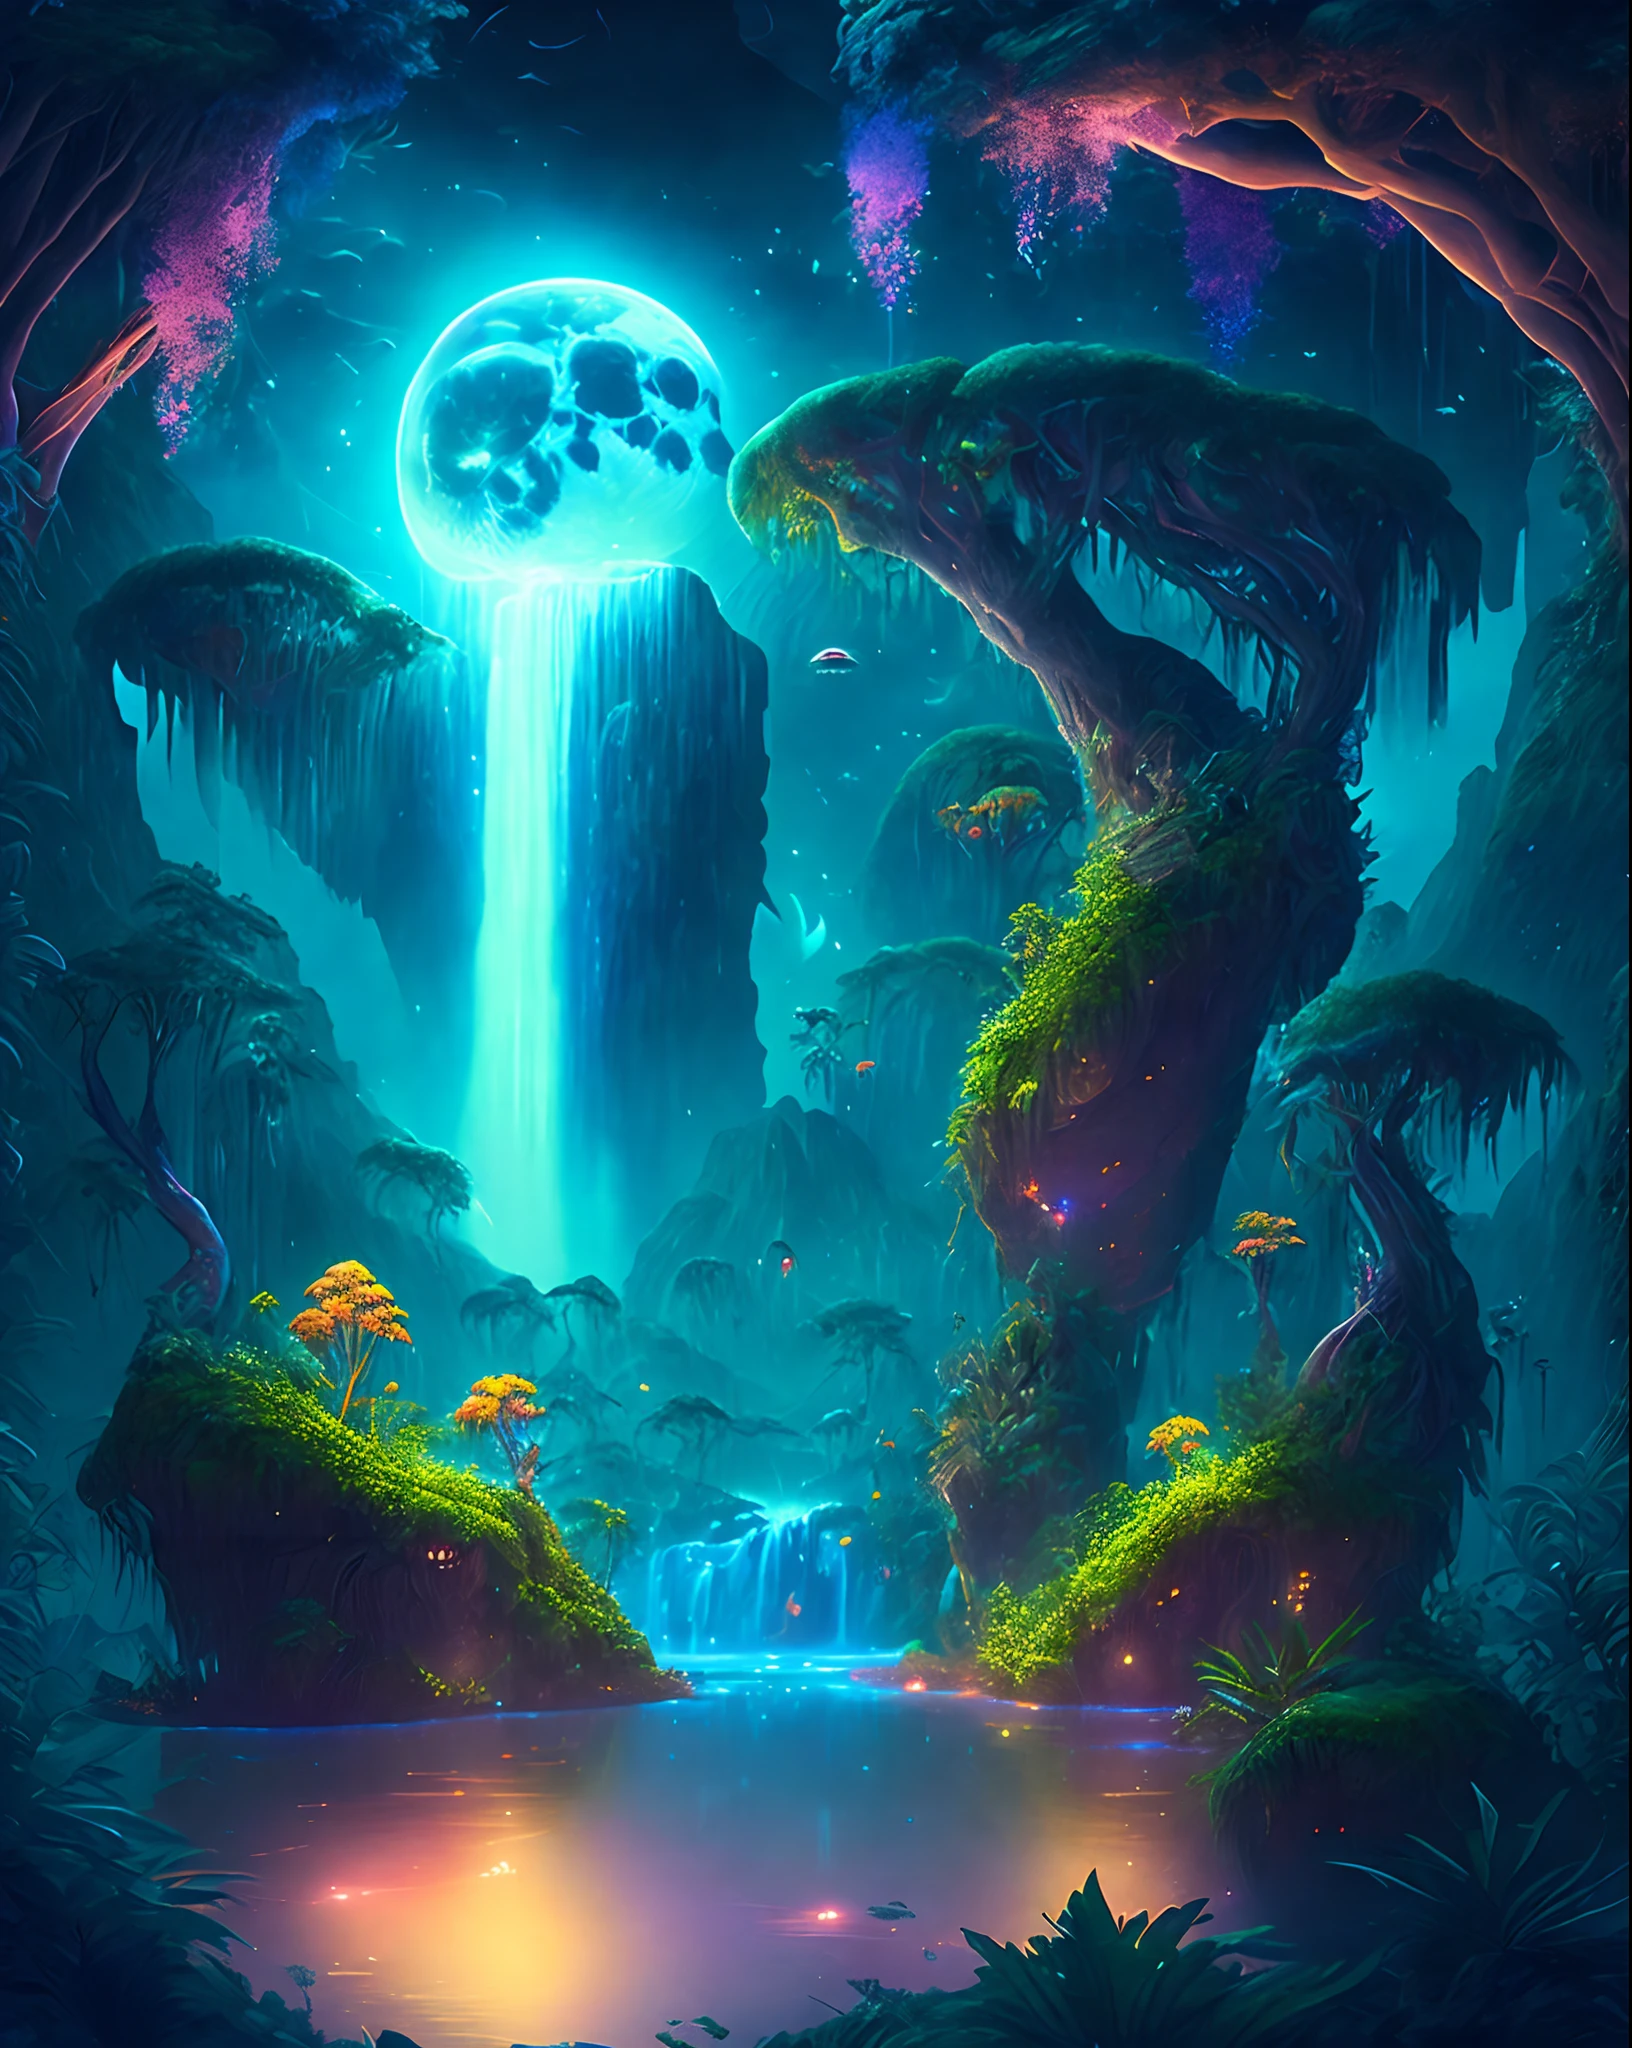 Ein bezaubernder Fantasy-Dschungel unter einem mondbeschienenen Himmel, riesige schwimmende Inseln mit üppiger Vegetation, kaskadierende Wasserfälle, und leuchtende Kreaturen, die durch die Nacht schweben, digitales Kunstwerk